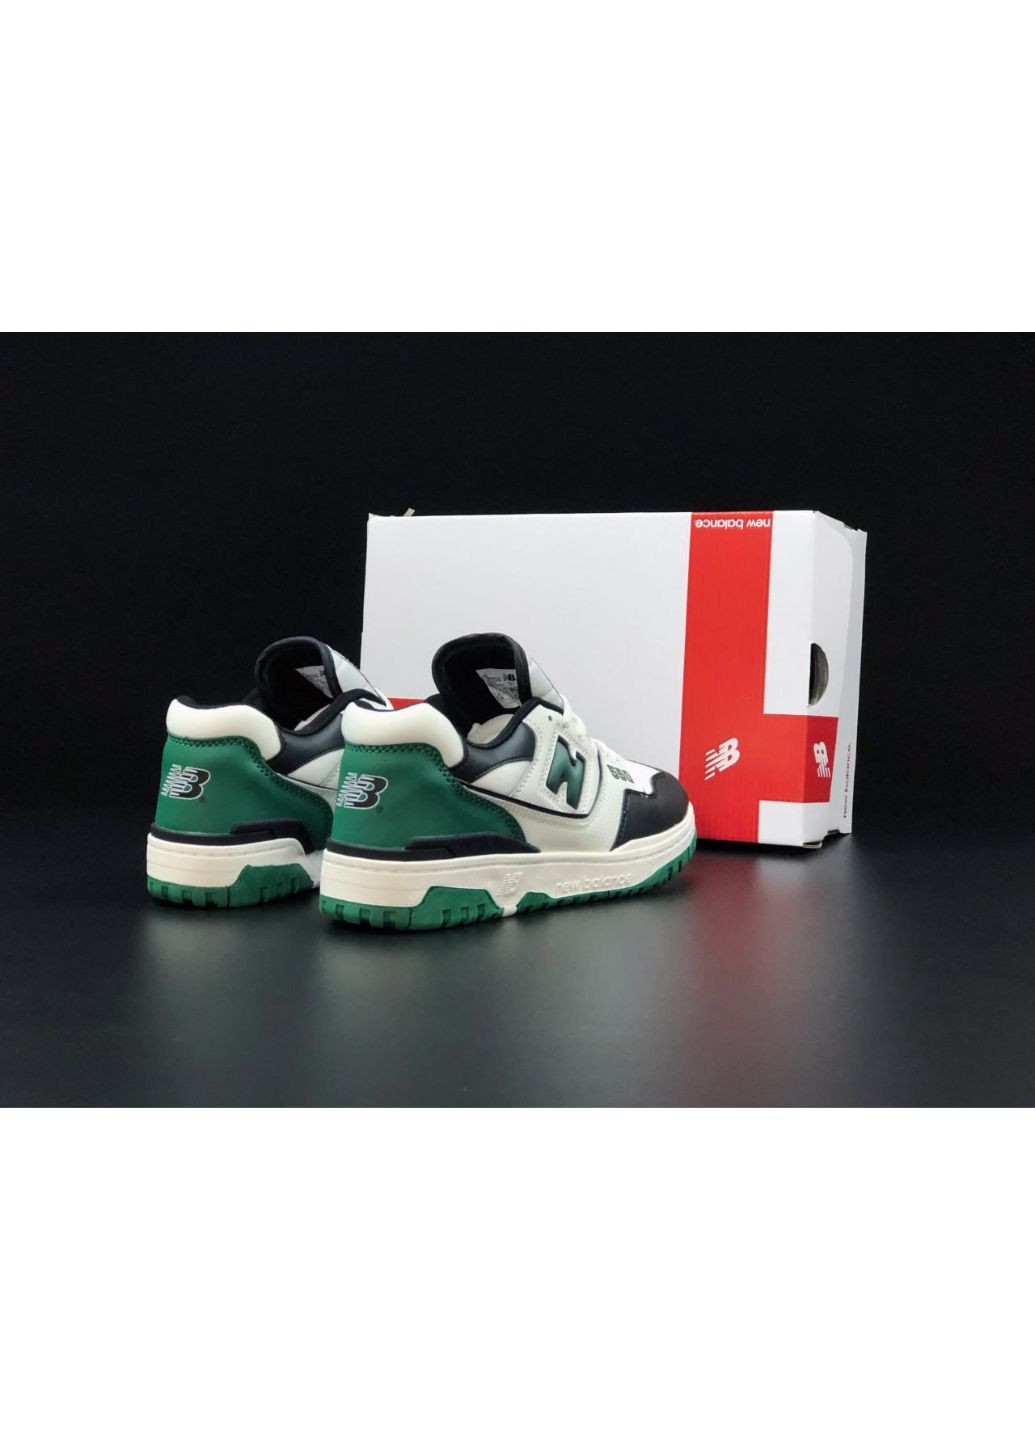 Белые демисезонные мужские кроссовки белые с зеленым "no name" New Balance 550